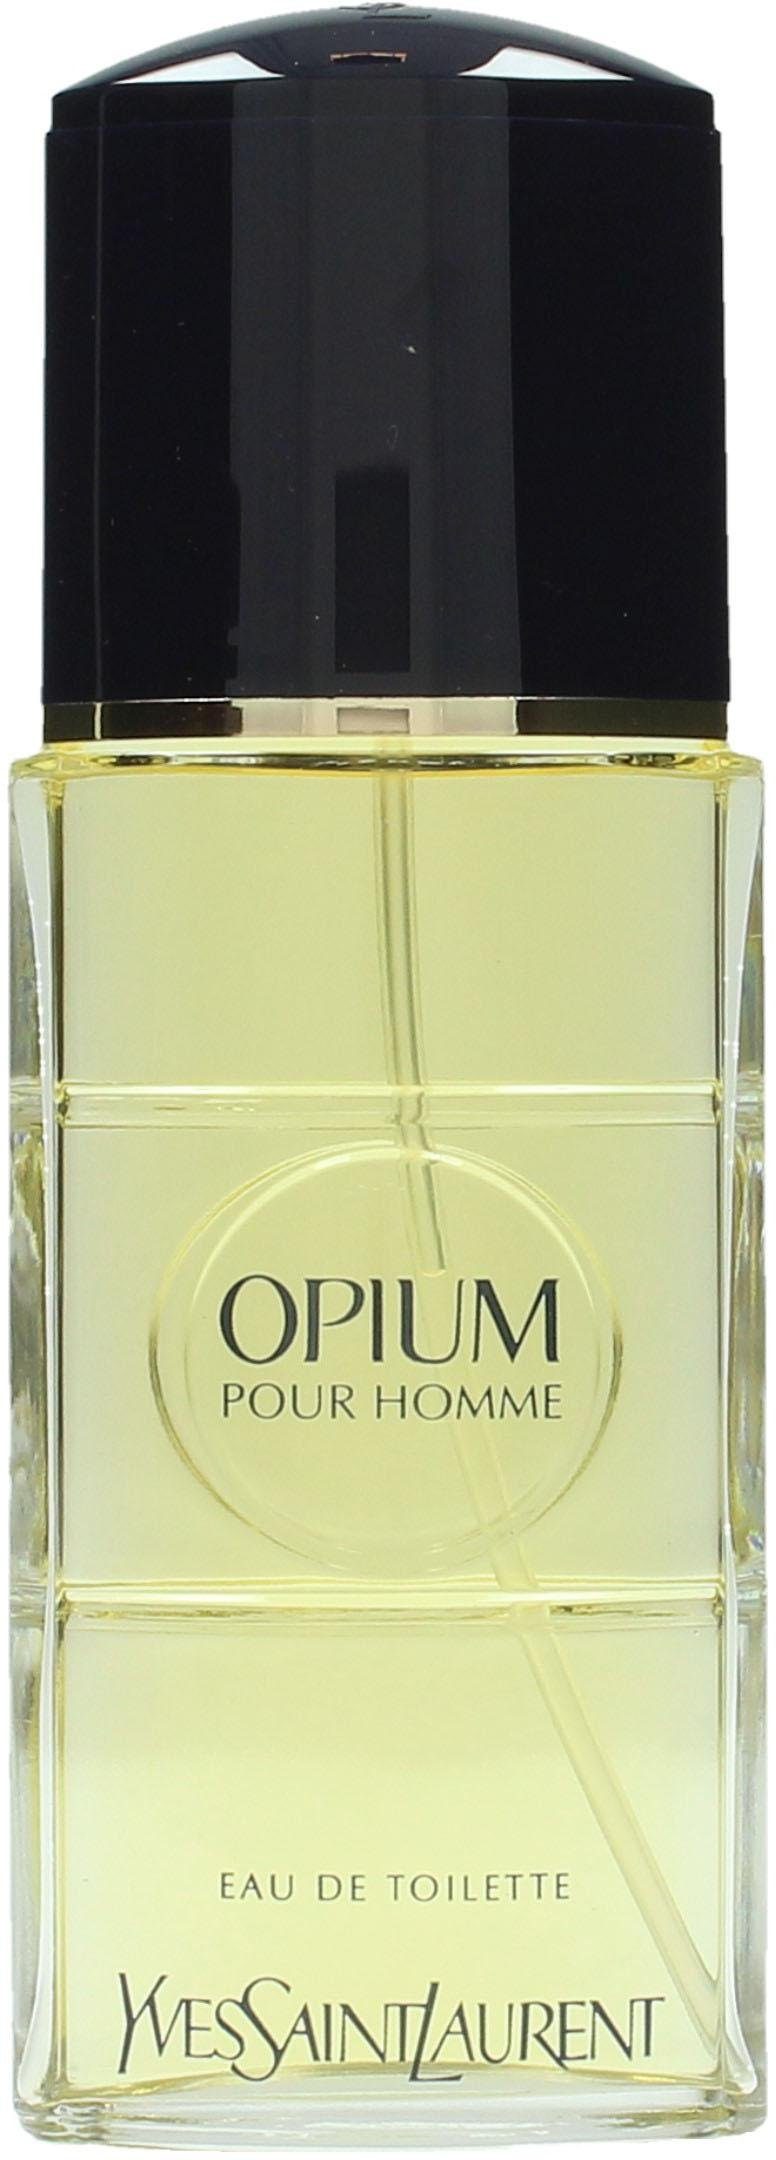 Opium Eau SAINT de LAURENT Toilette YVES